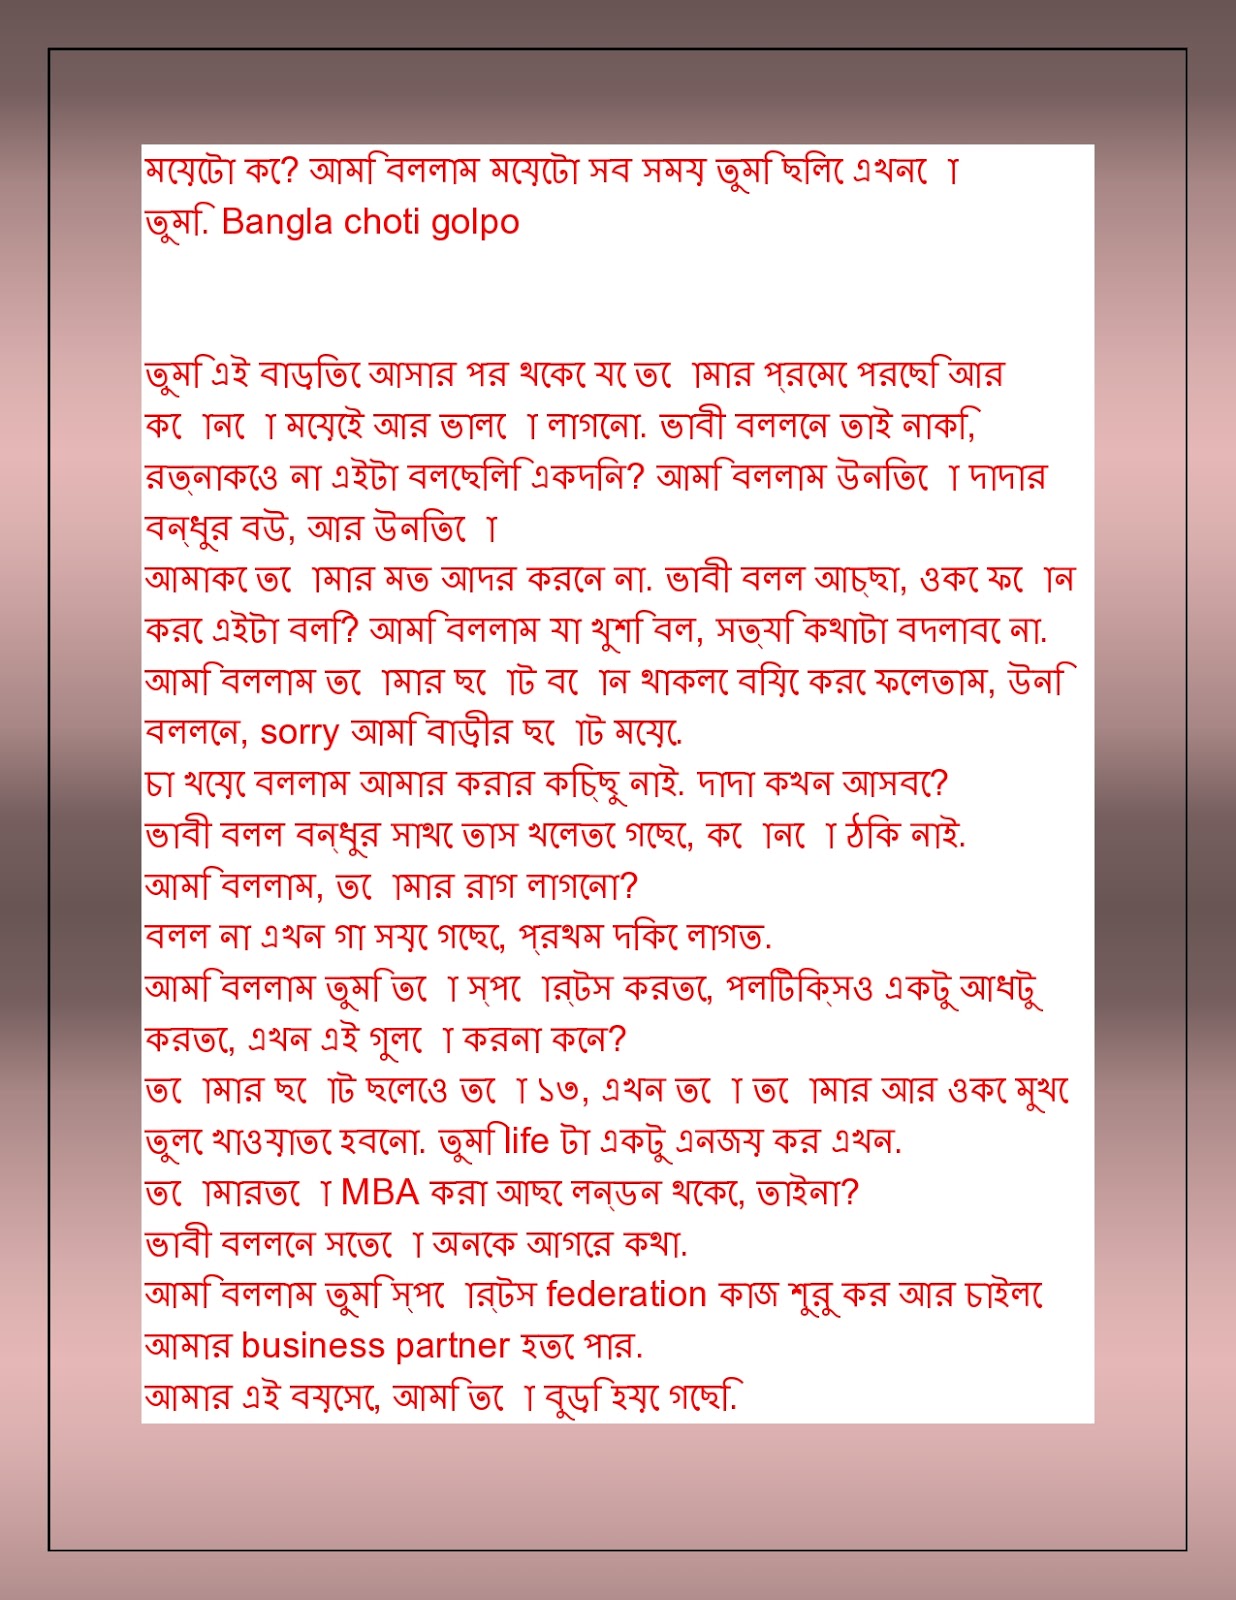 1236px x 1600px - Bangla bhabi chodar golpo.